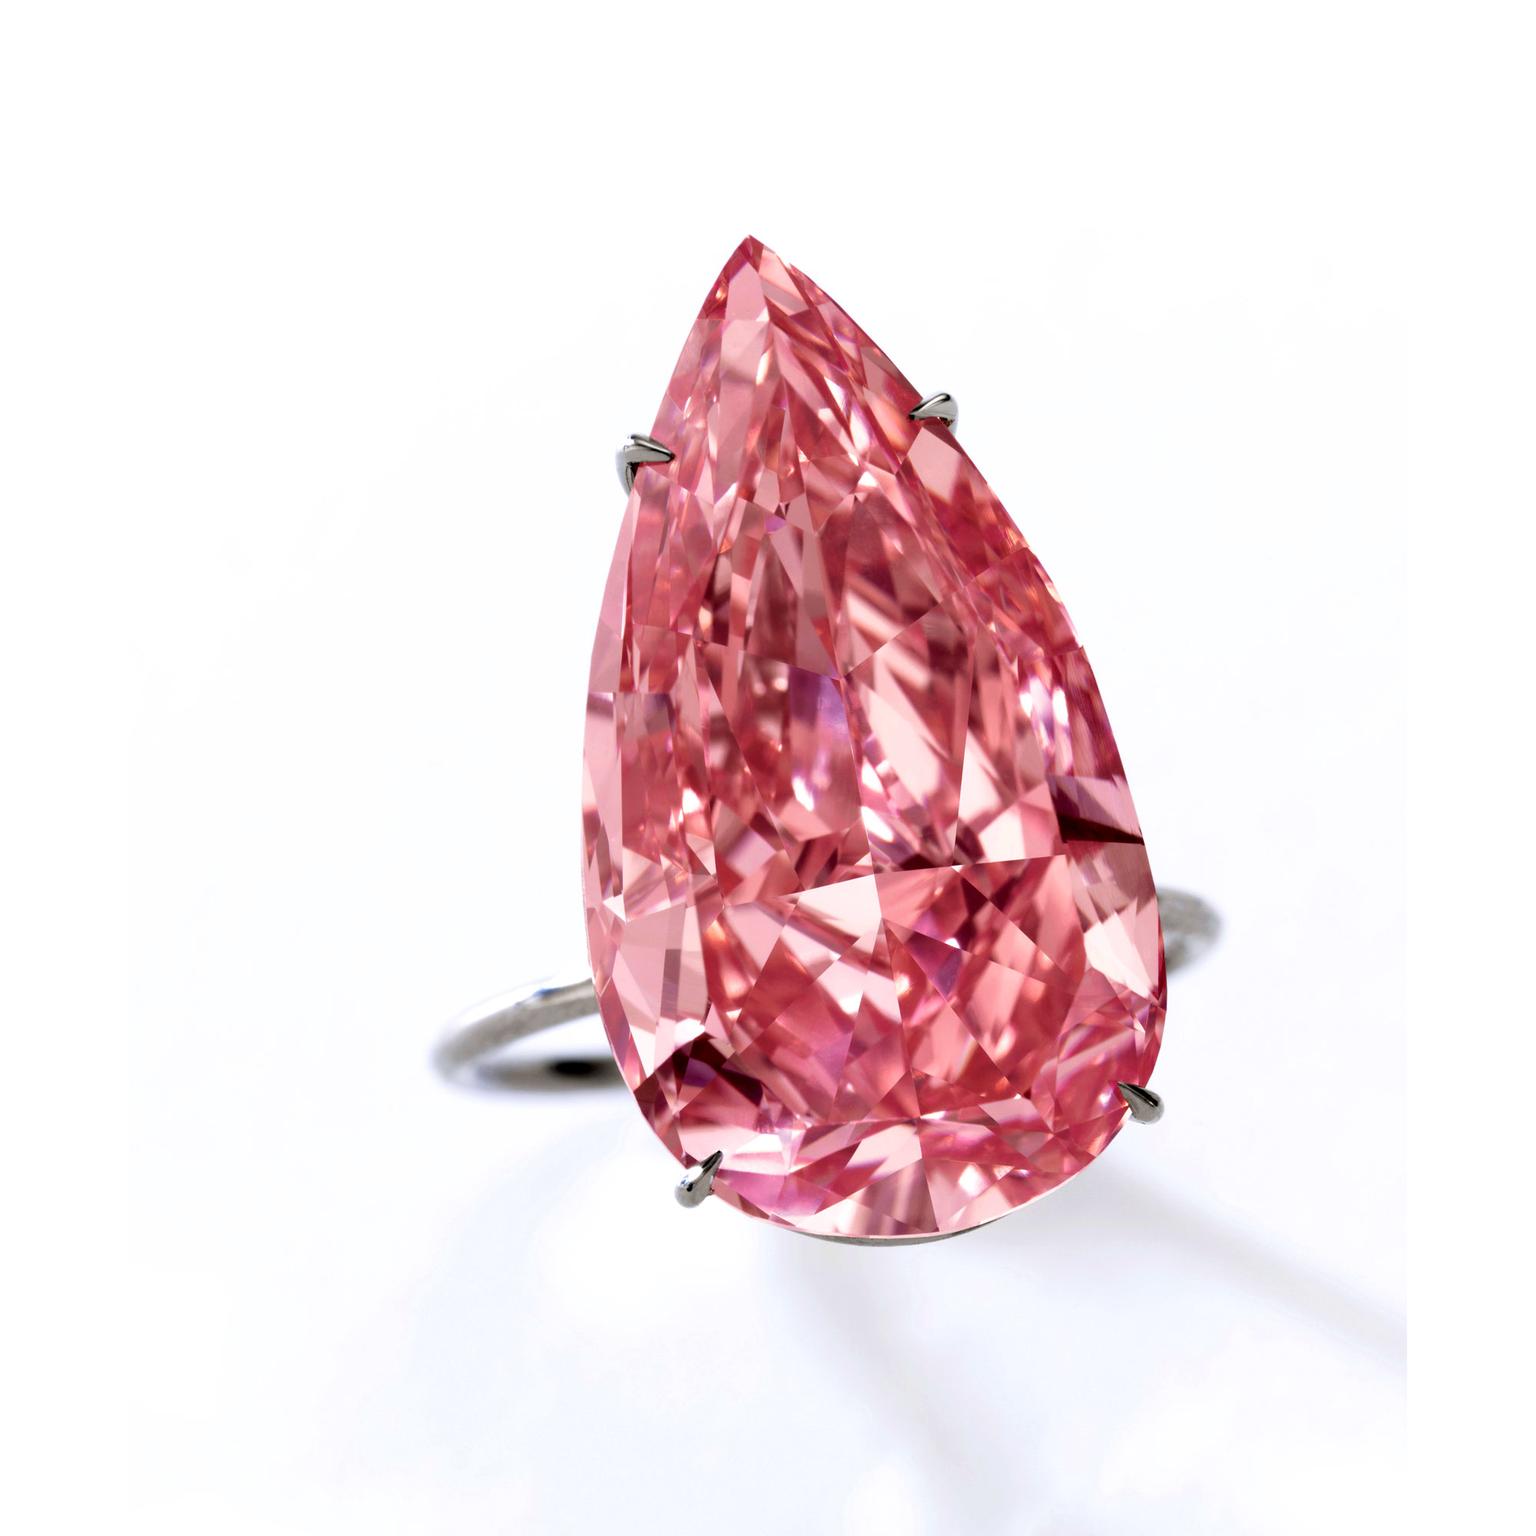 The Unique Pink diamond - Sotheby's Geneva